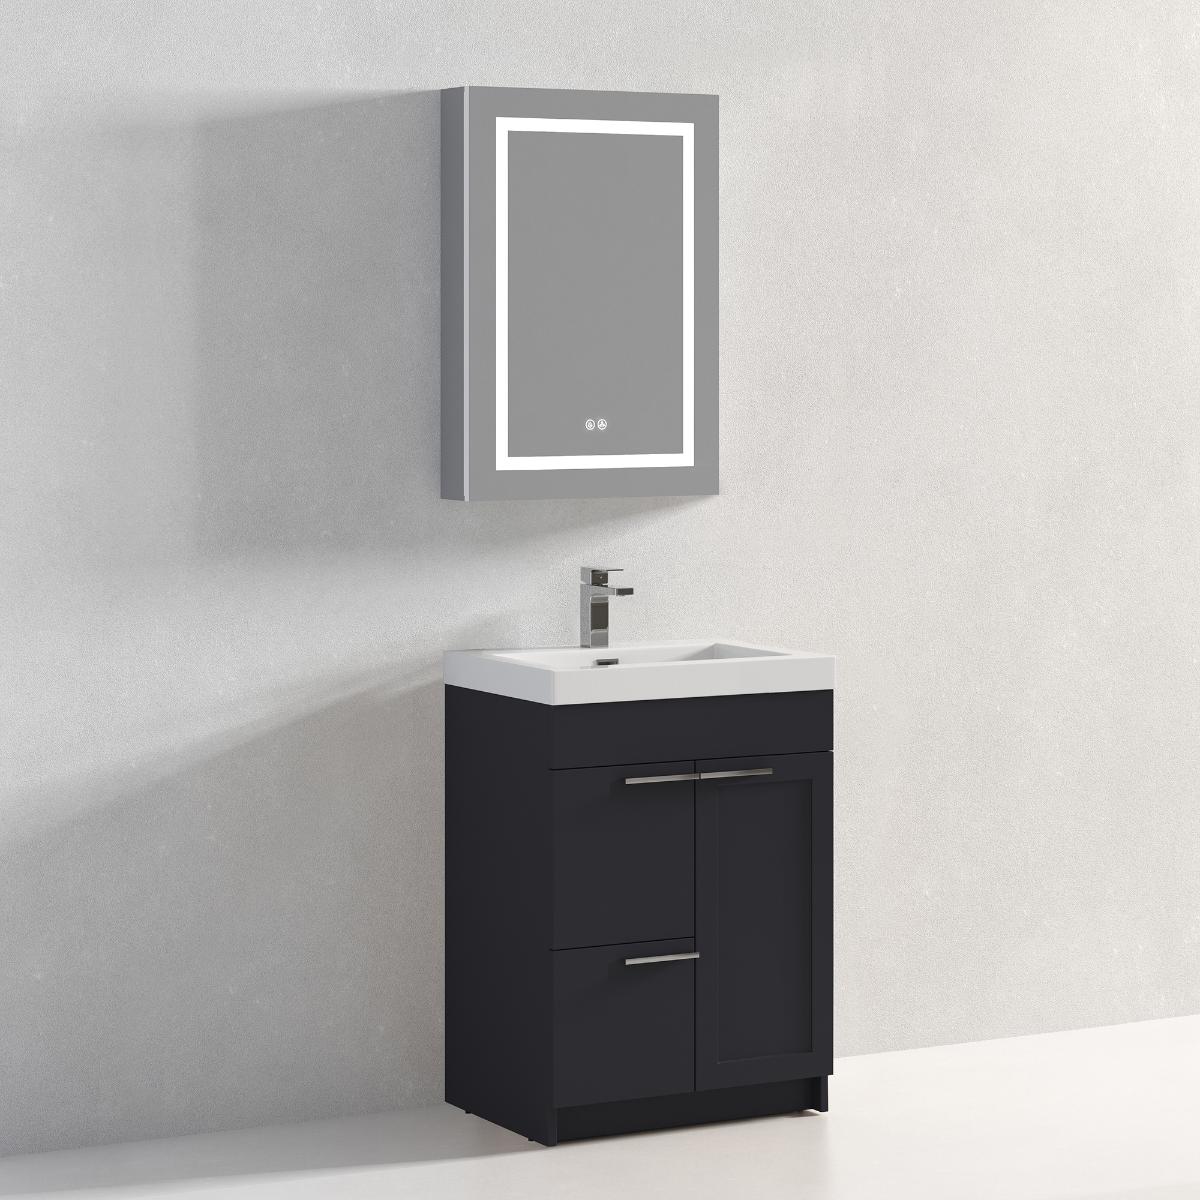 Hanover 24" Bathroom Vanity with Top - Contemporary Bathroom Vanity